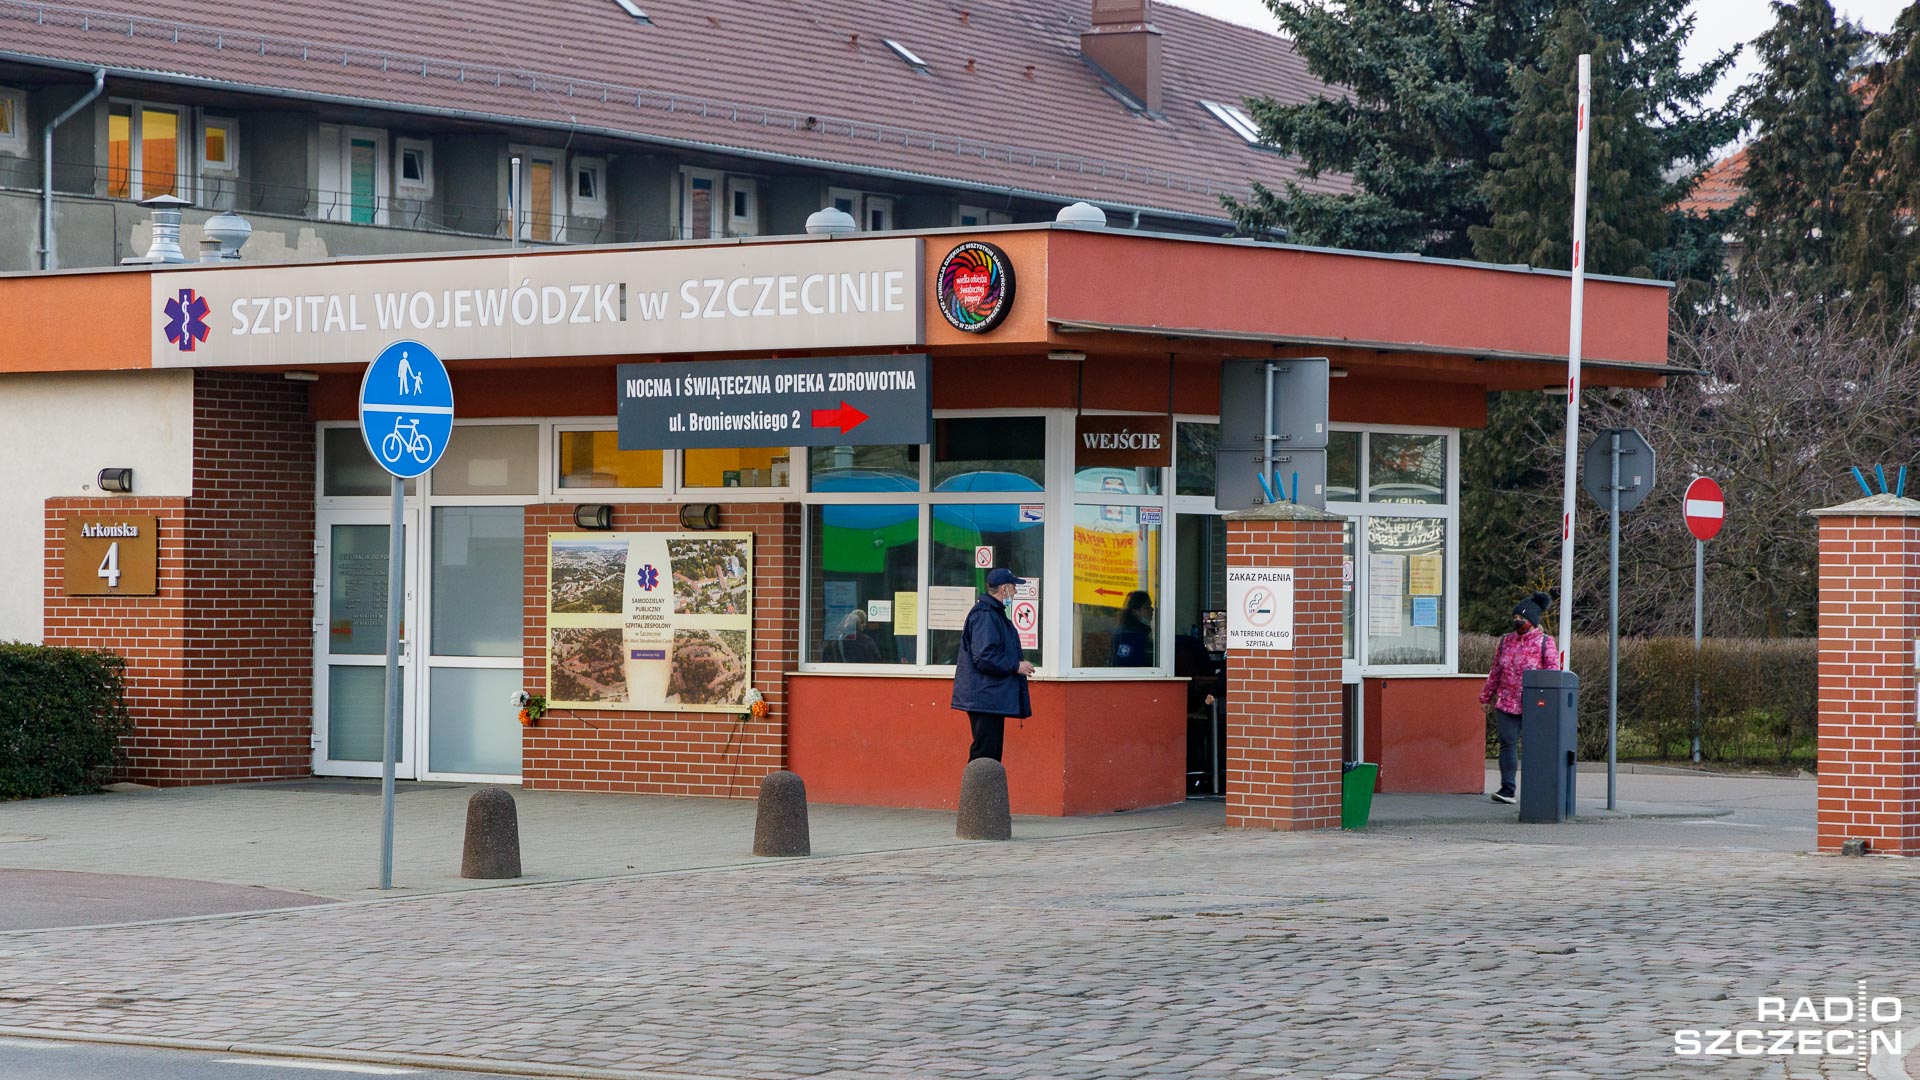 Szpital wojewódzki przy ulicy Arkońskiej w Szczecinie zawiesza oddział reumatologii. To przez brak lekarzy.